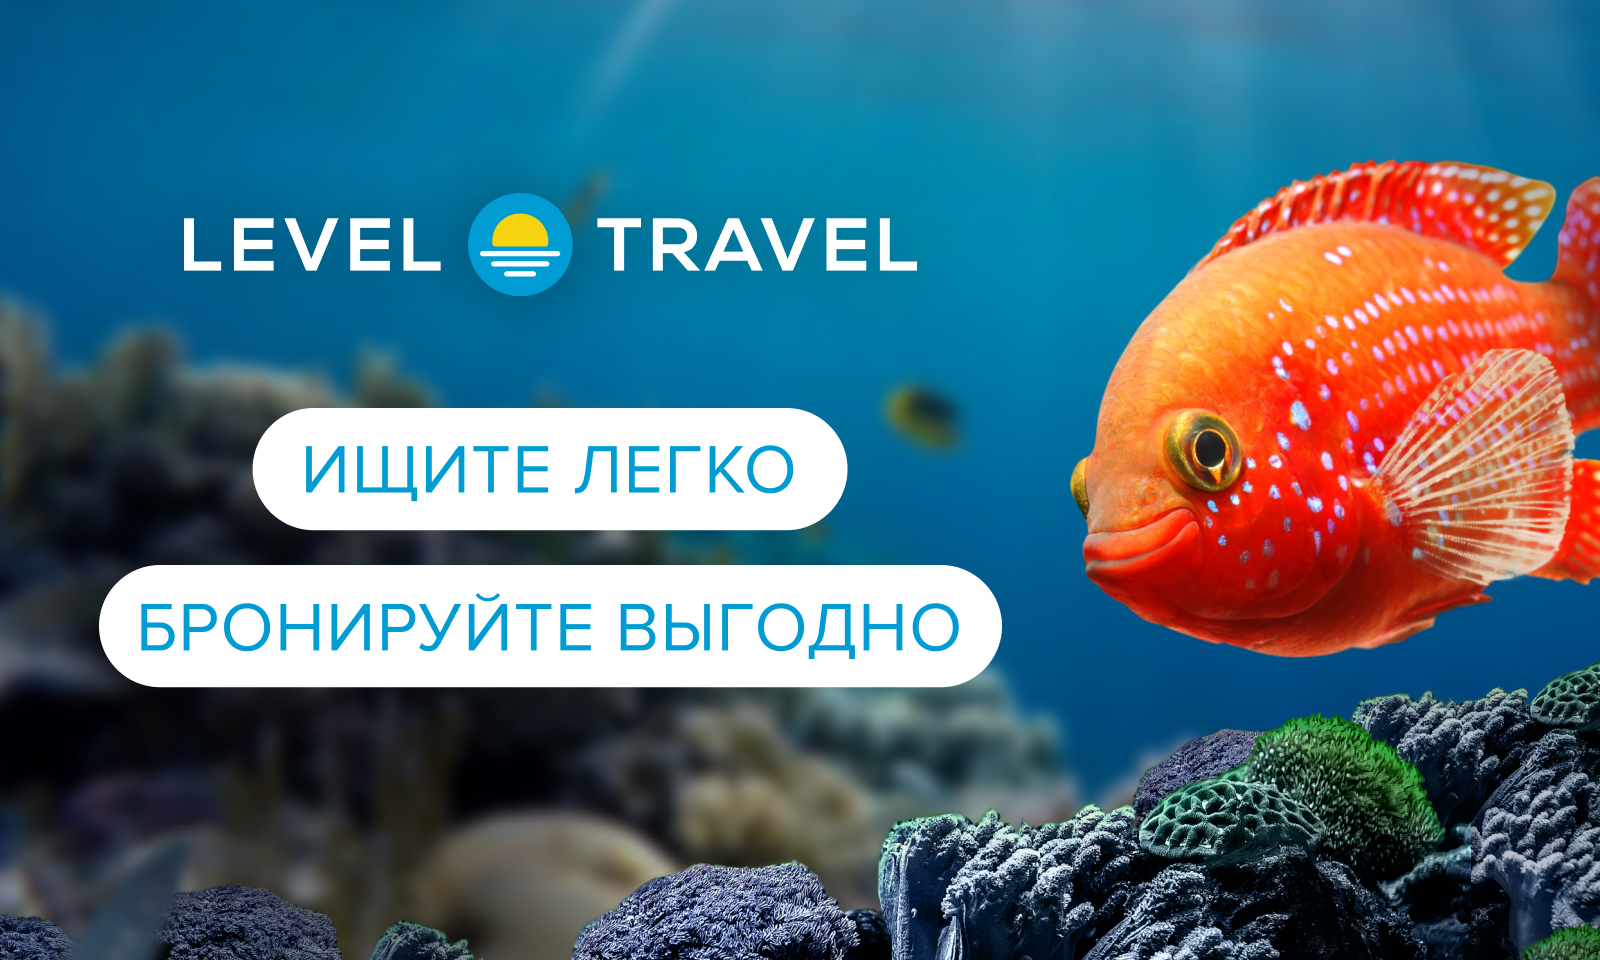 Онлайн сервис бронирования туров и отелей Level.Travel